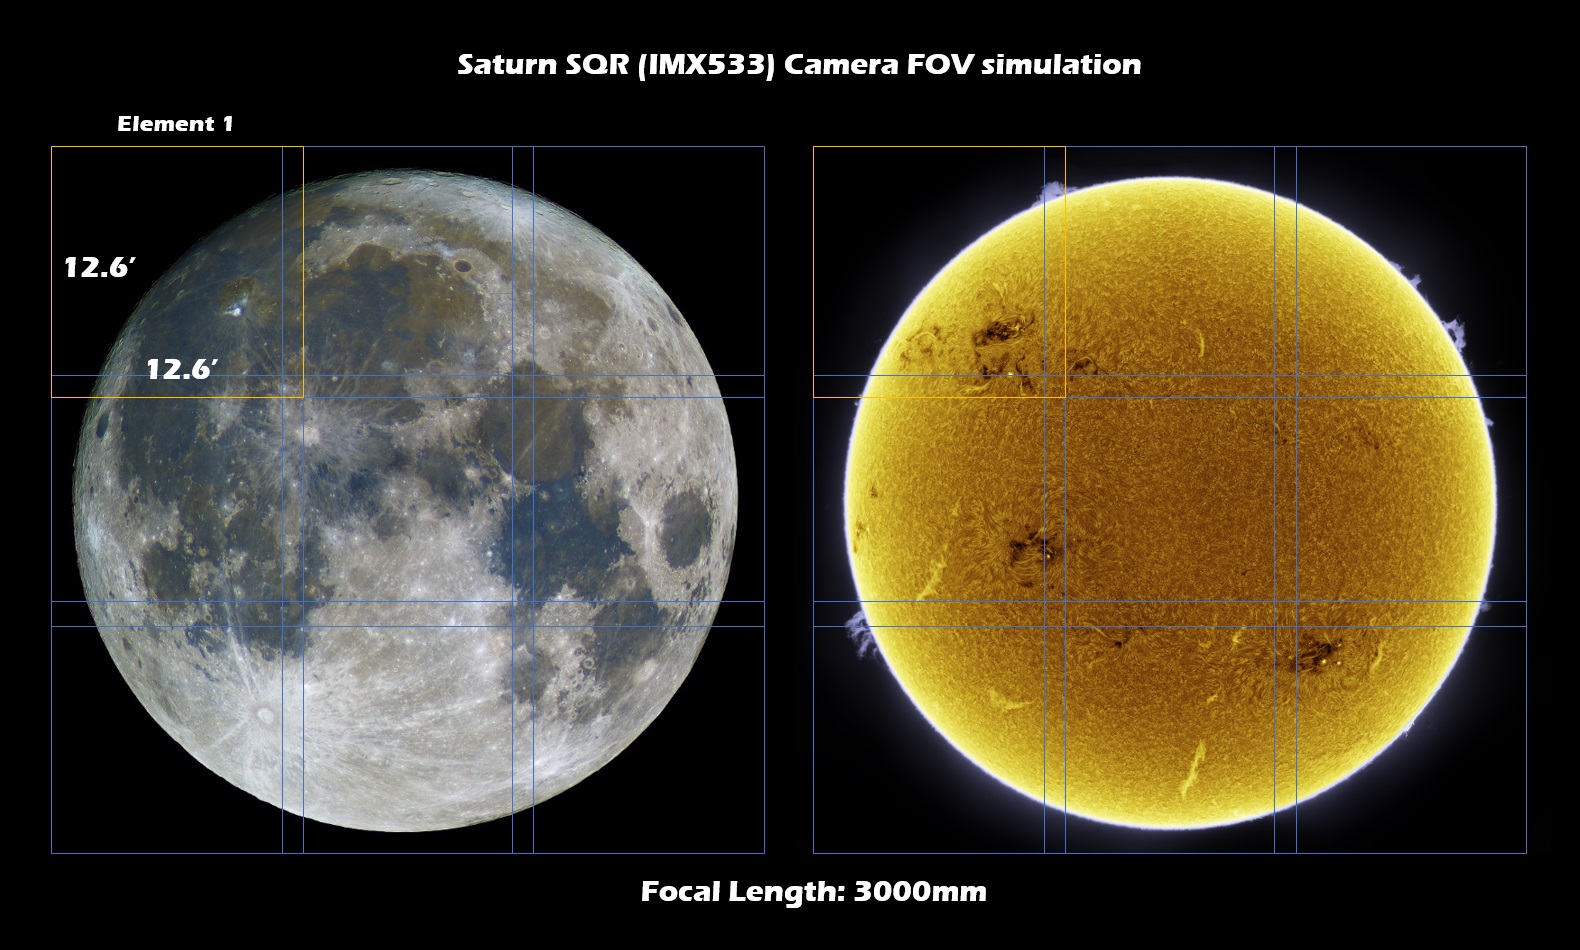 Saturn-SQR-simulation-FL3000mm.jpg